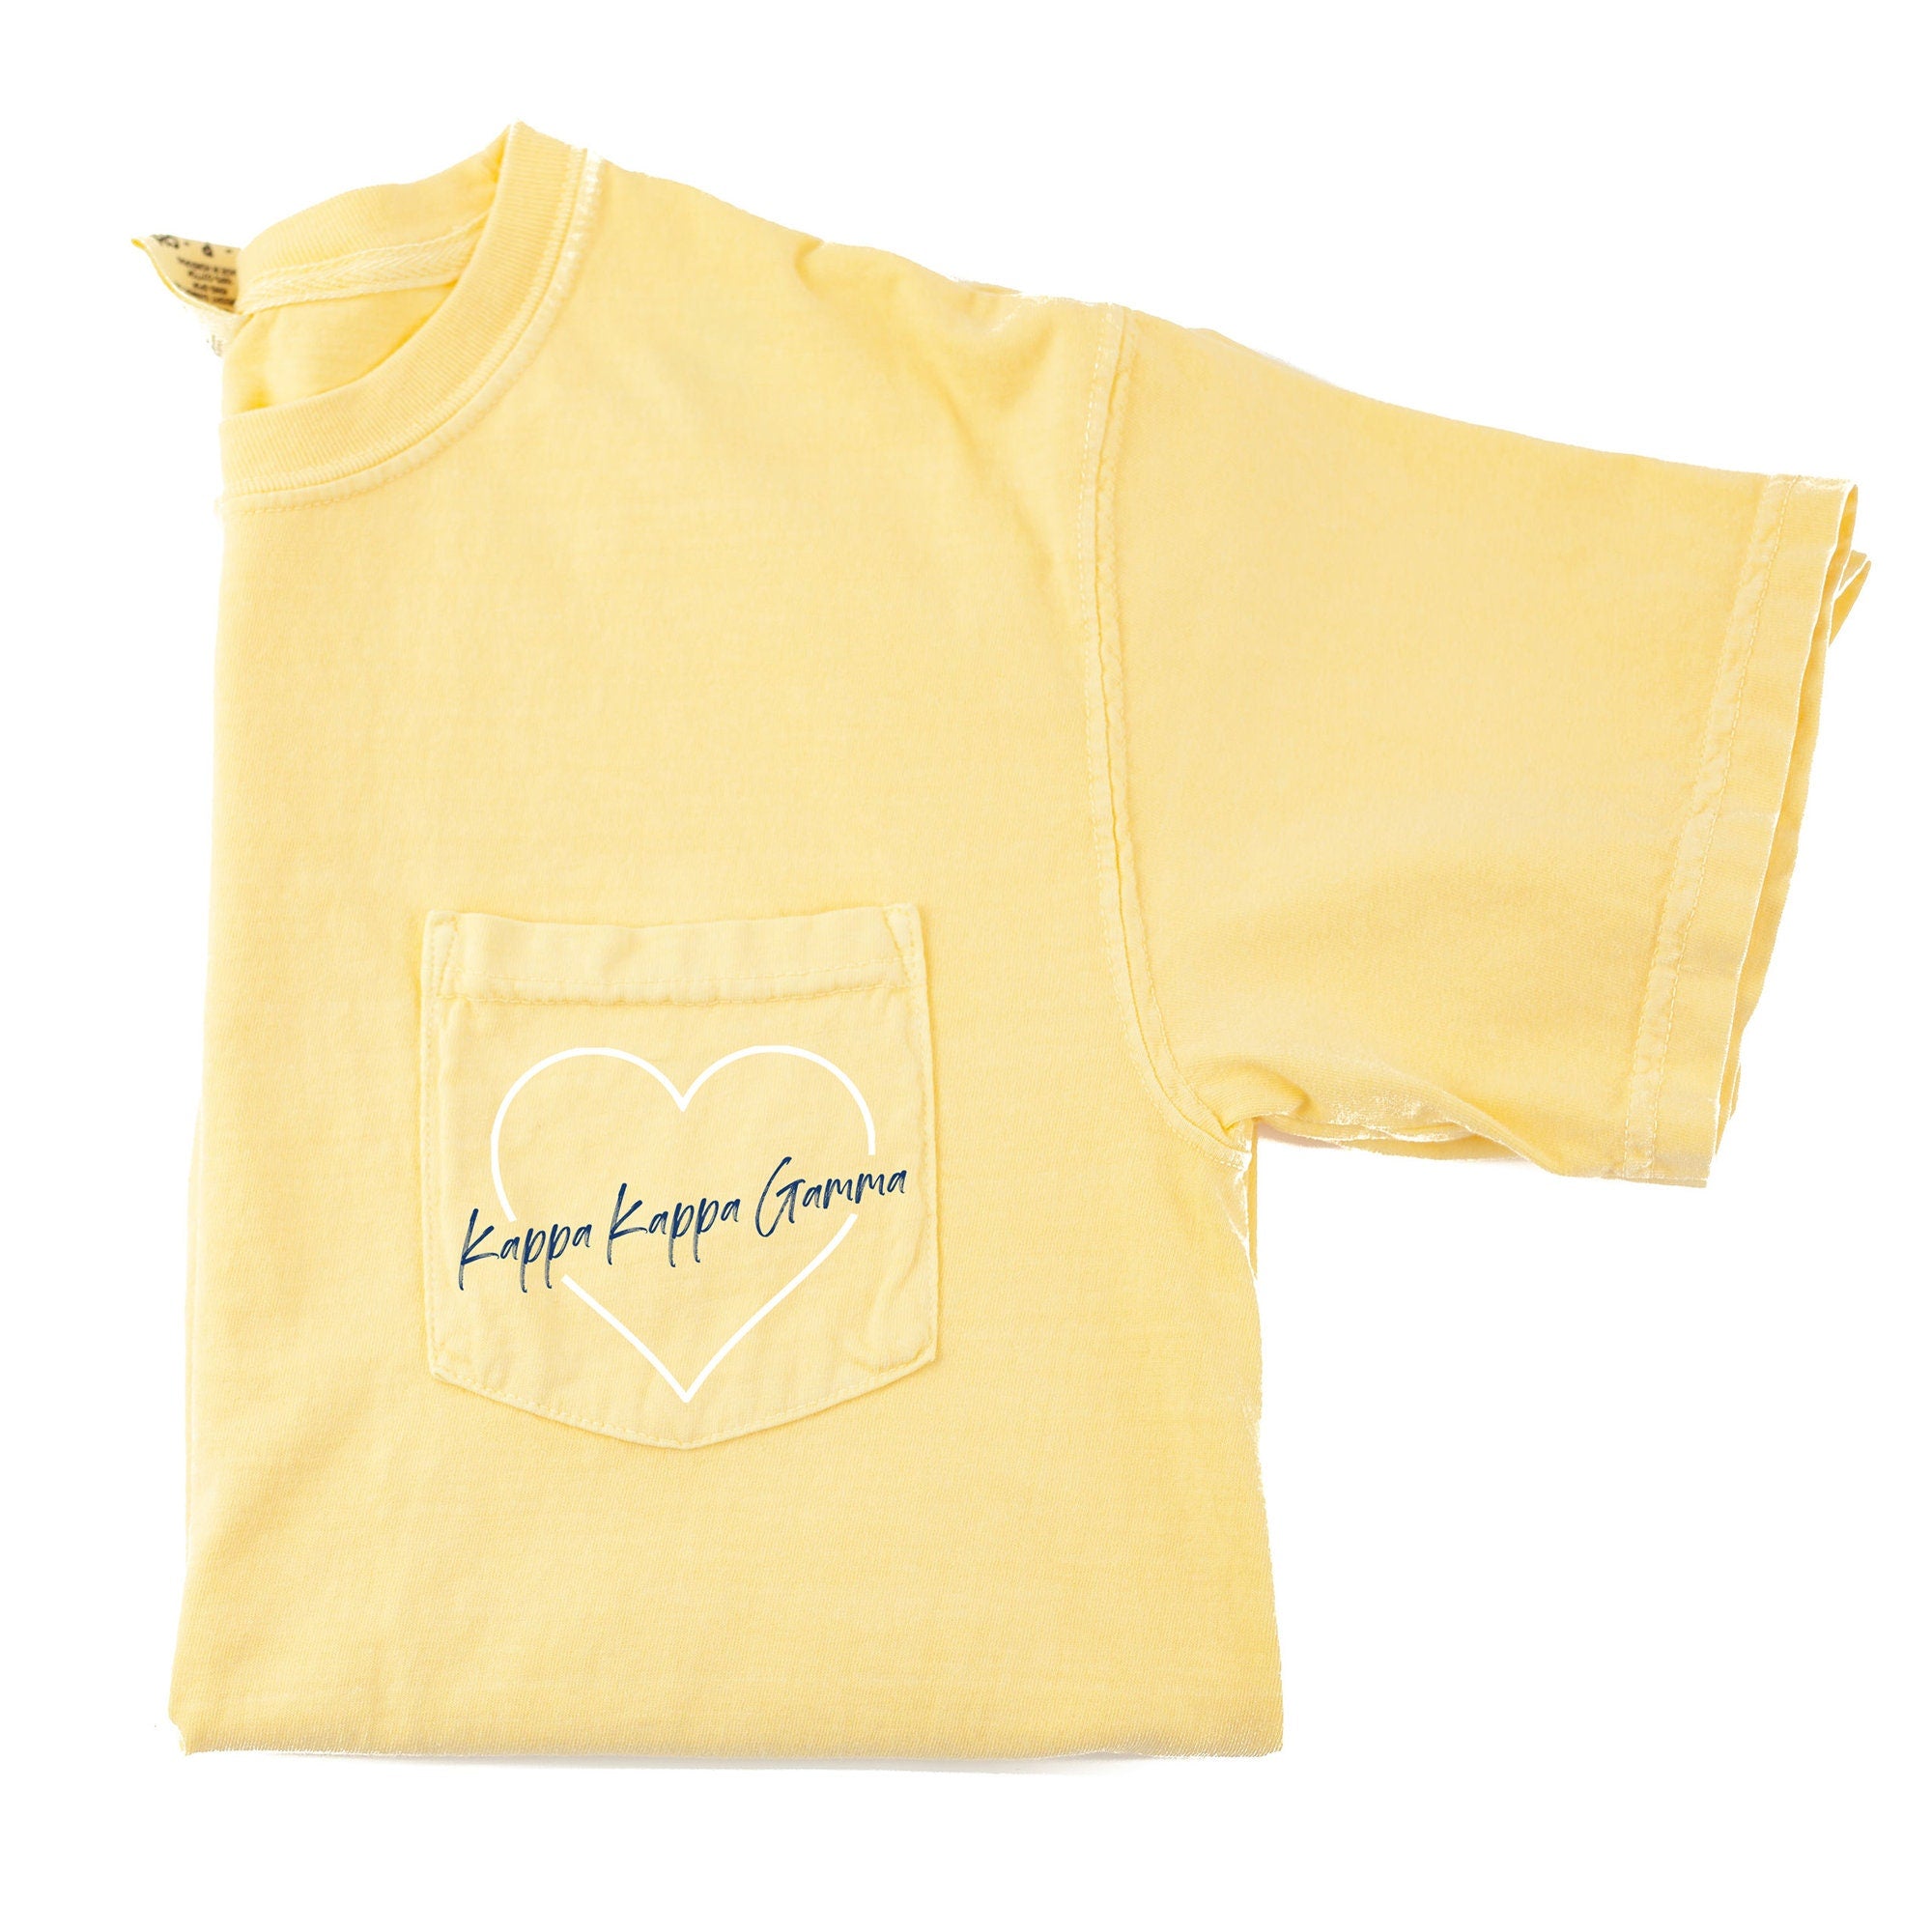 Kappa Kappa Gamma Heart Pocket T-Shirt - Butter - Go Greek Chic